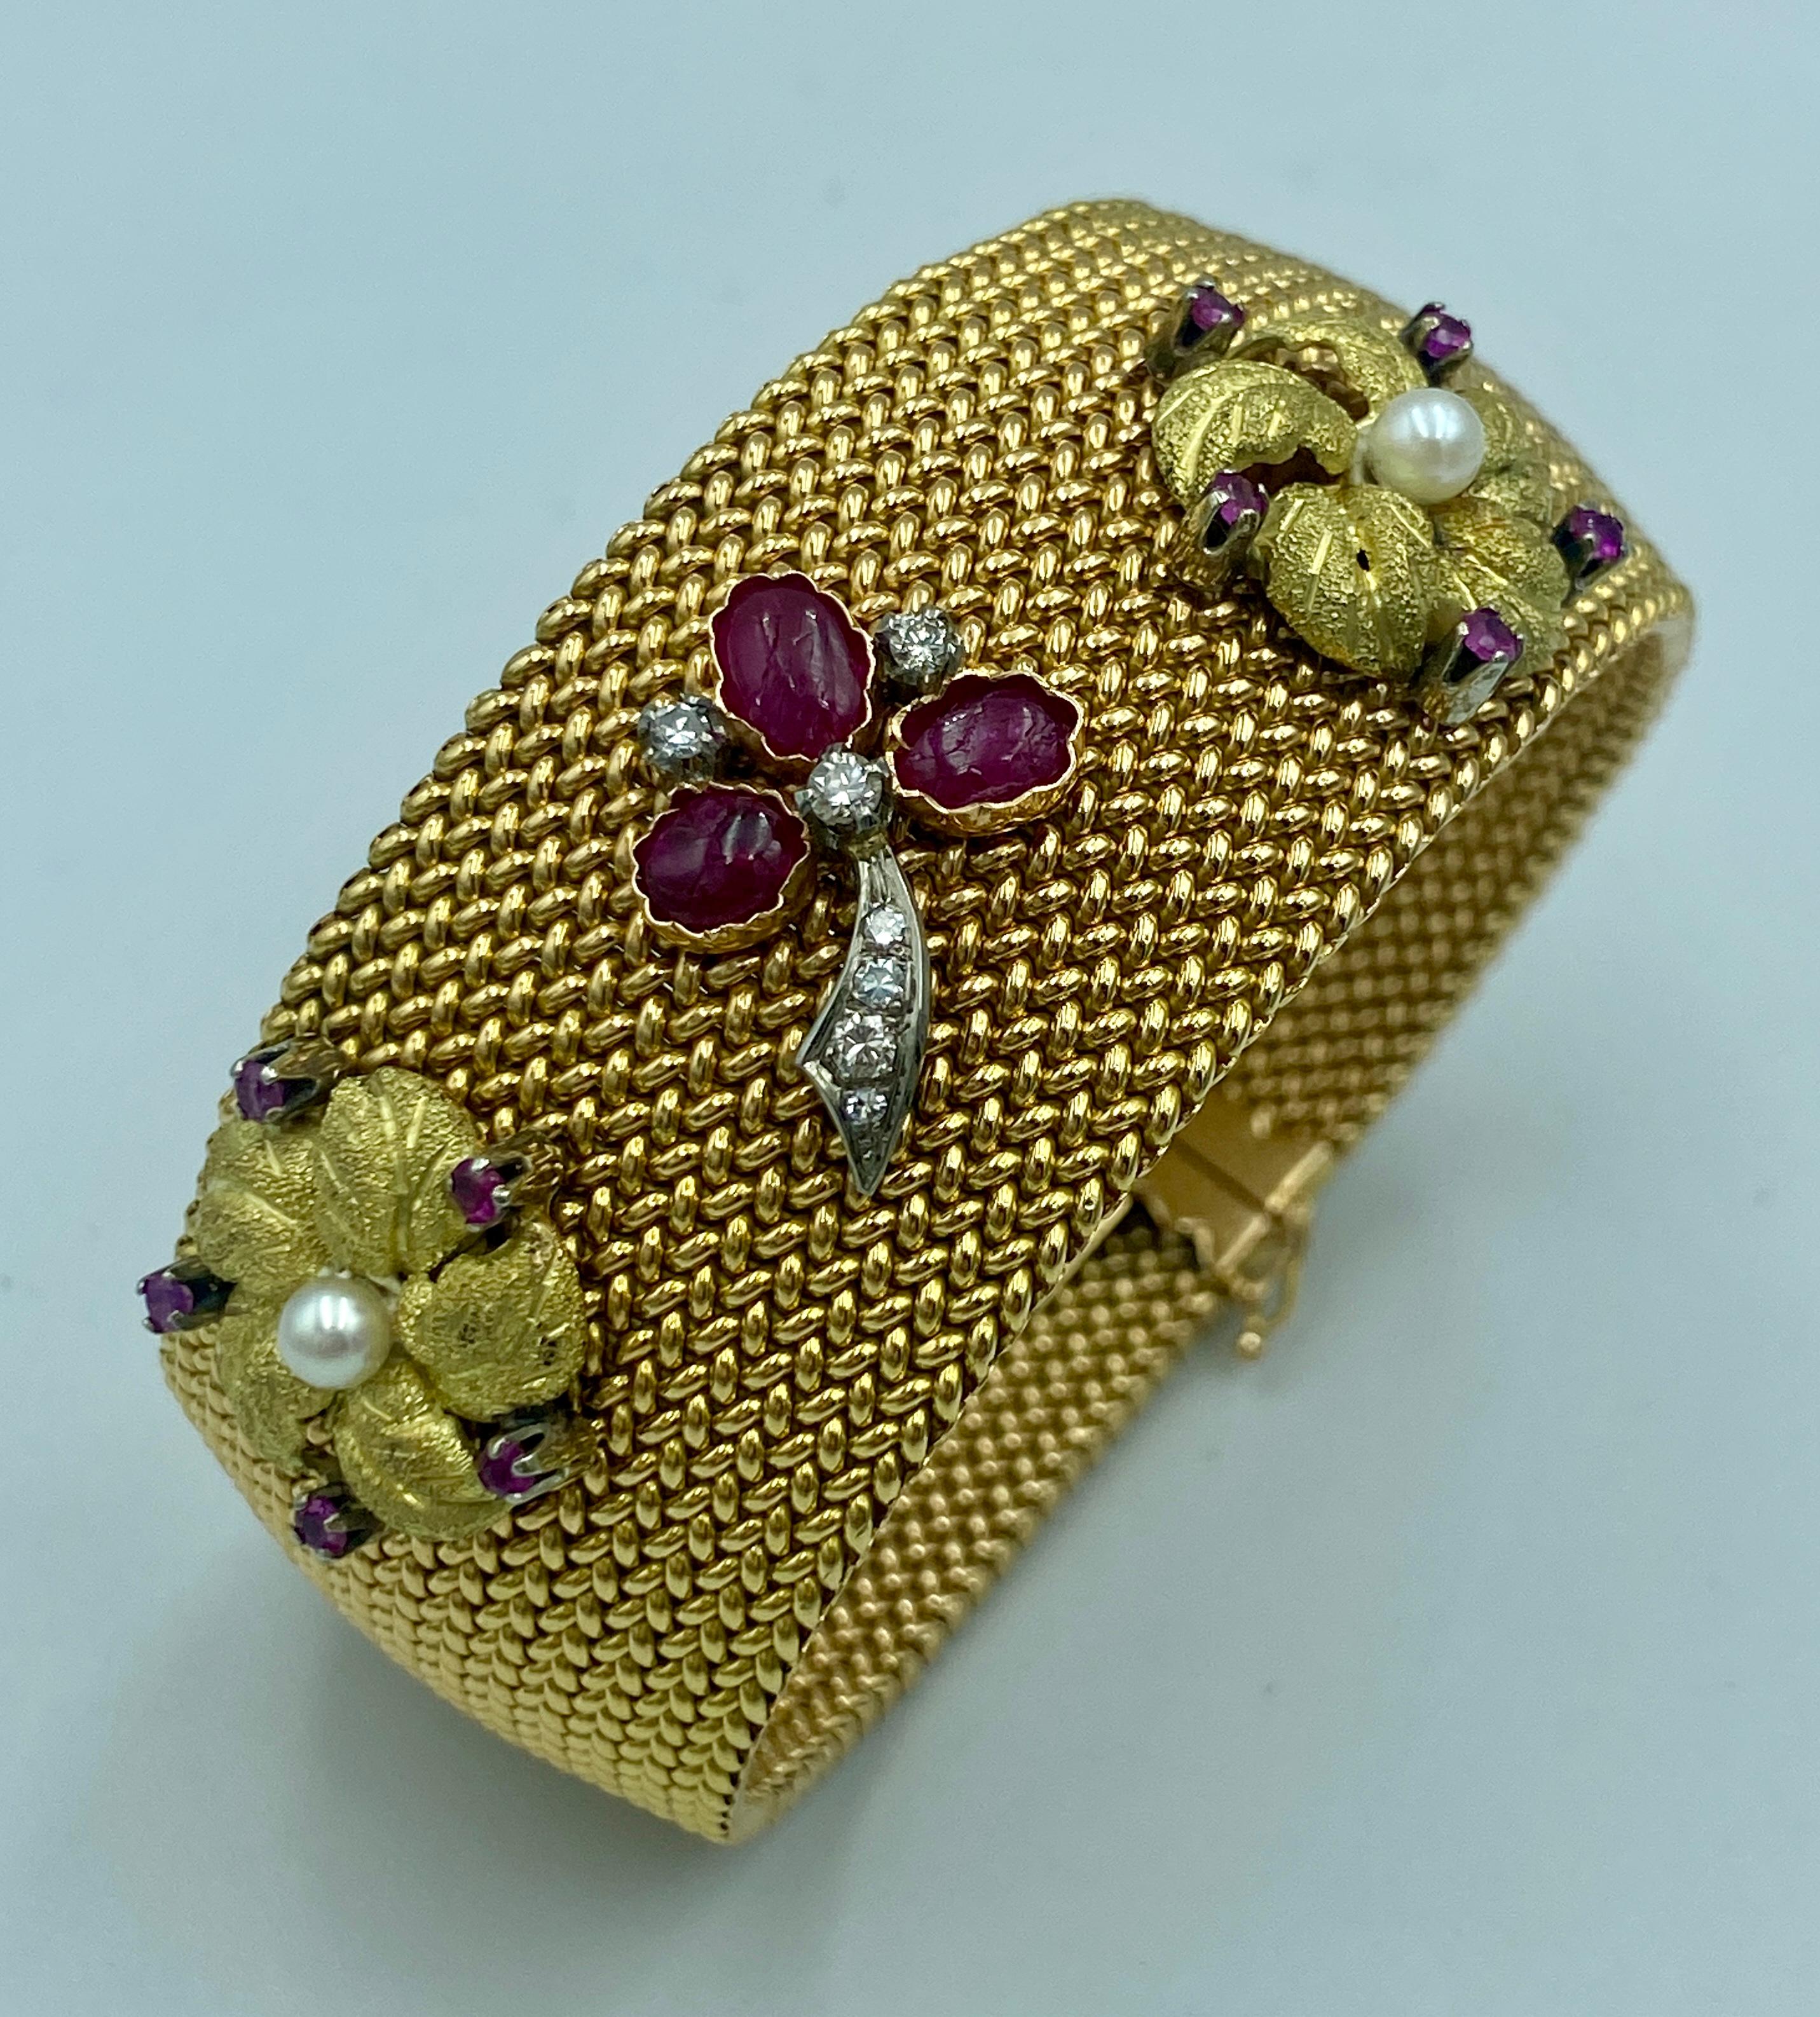 Il s'agit d'un magnifique bracelet manchette italien des années 1950 en or 18k tissé à la main. La manchette est ornée de motifs de fleurs et de feuilles en or, de rubis birmans, de perles et de diamants. 